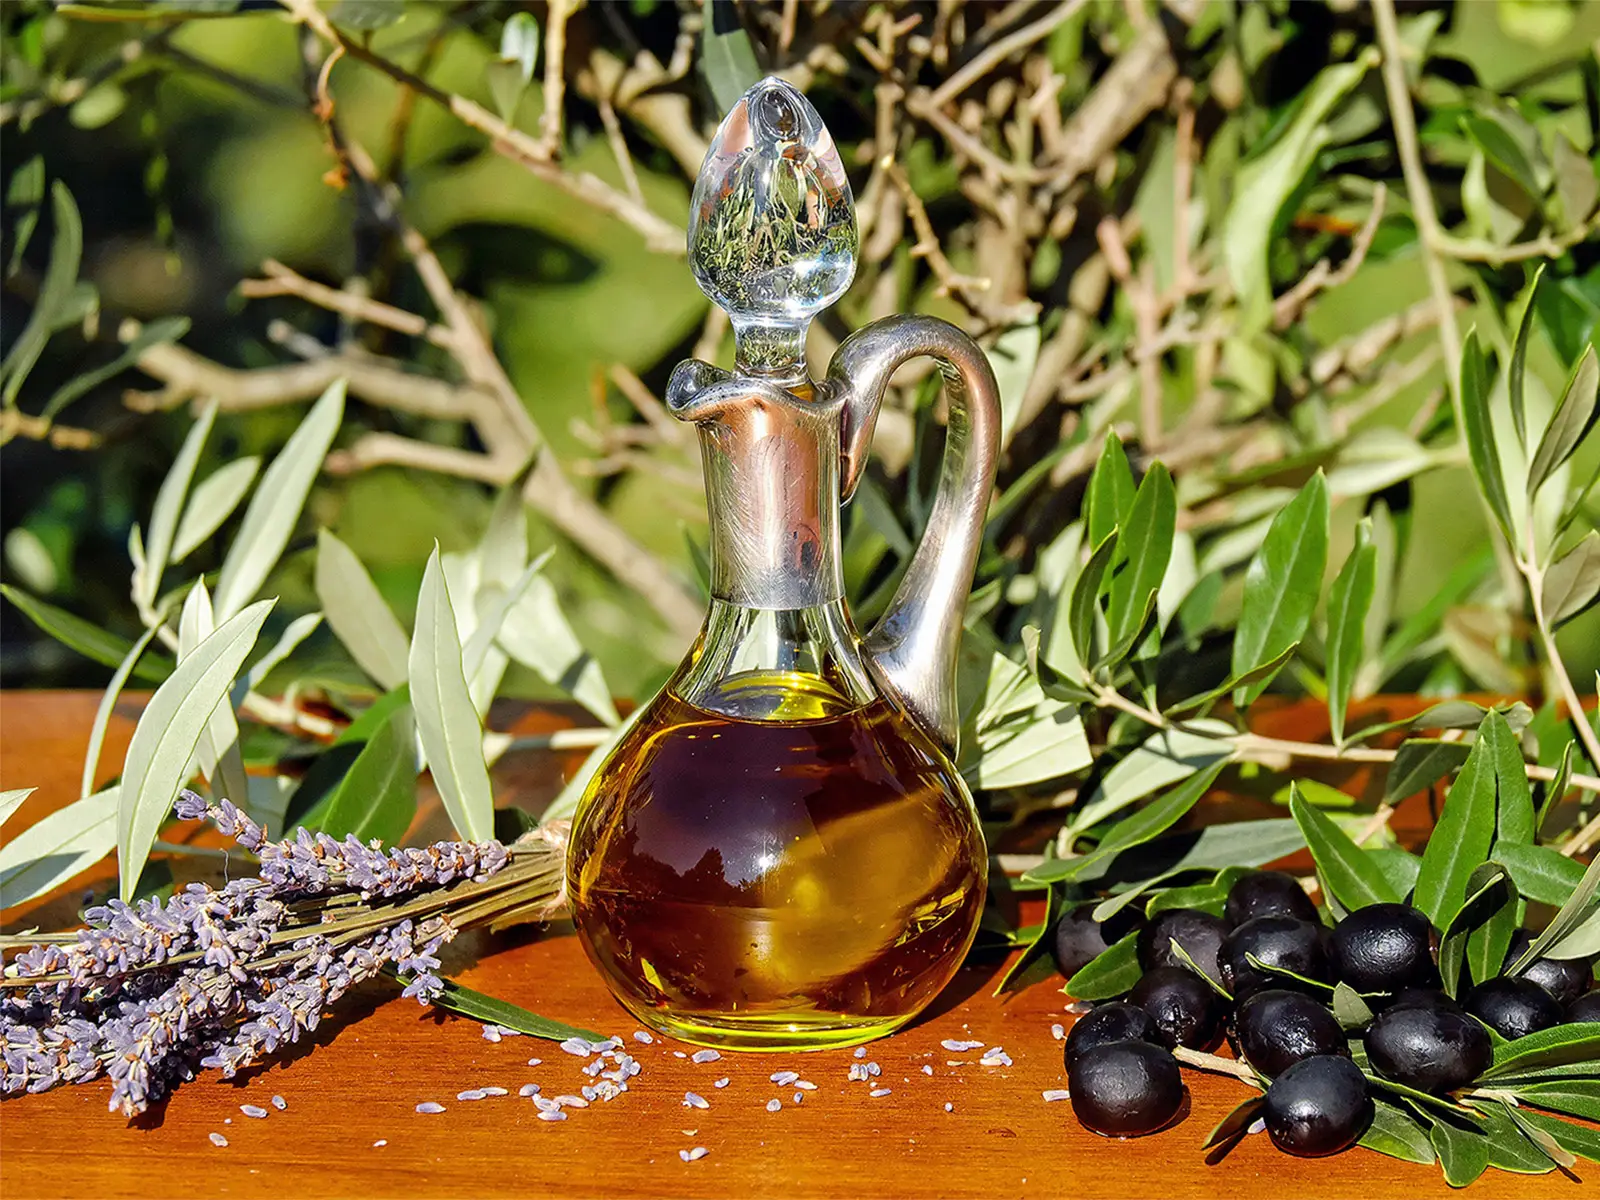 Combattere il caldo con l'olio d'oliva? Si può, parola di Harvard